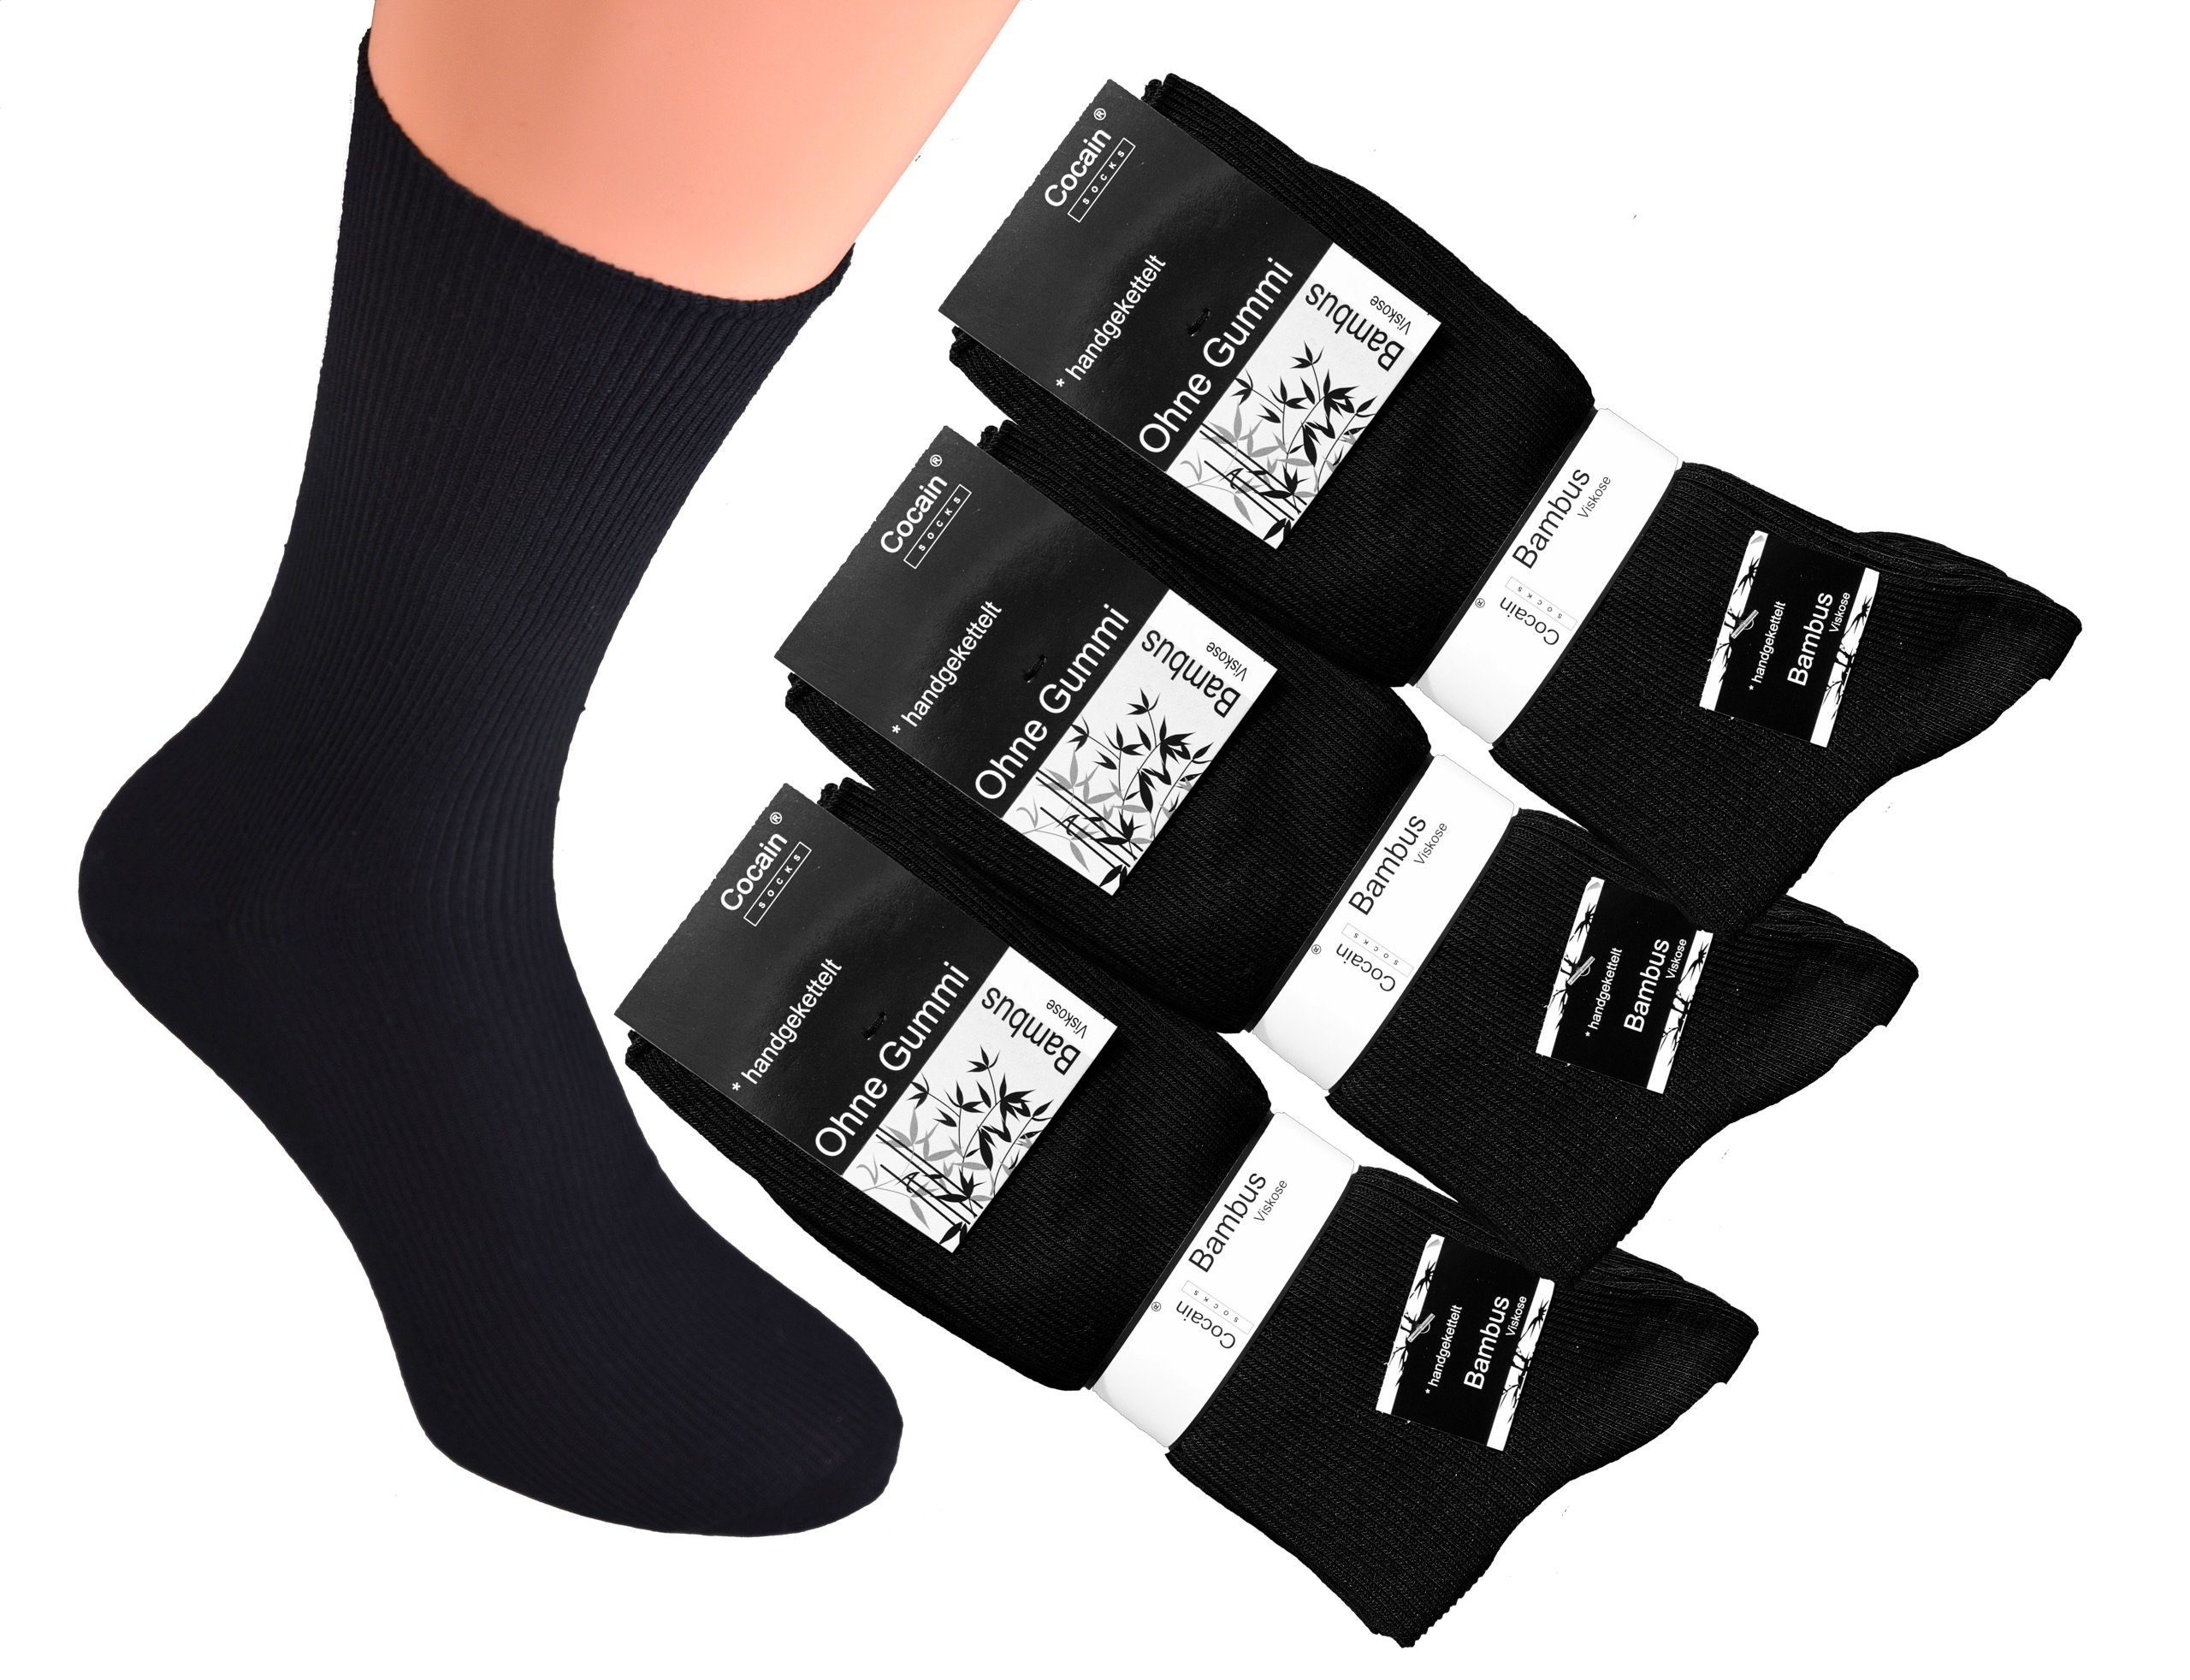 Cocain underwear Funktionssocken Bambus Socken atmungsaktive Naturfaser schweissmindernd (24-Paar) ohne Gummi schwarz